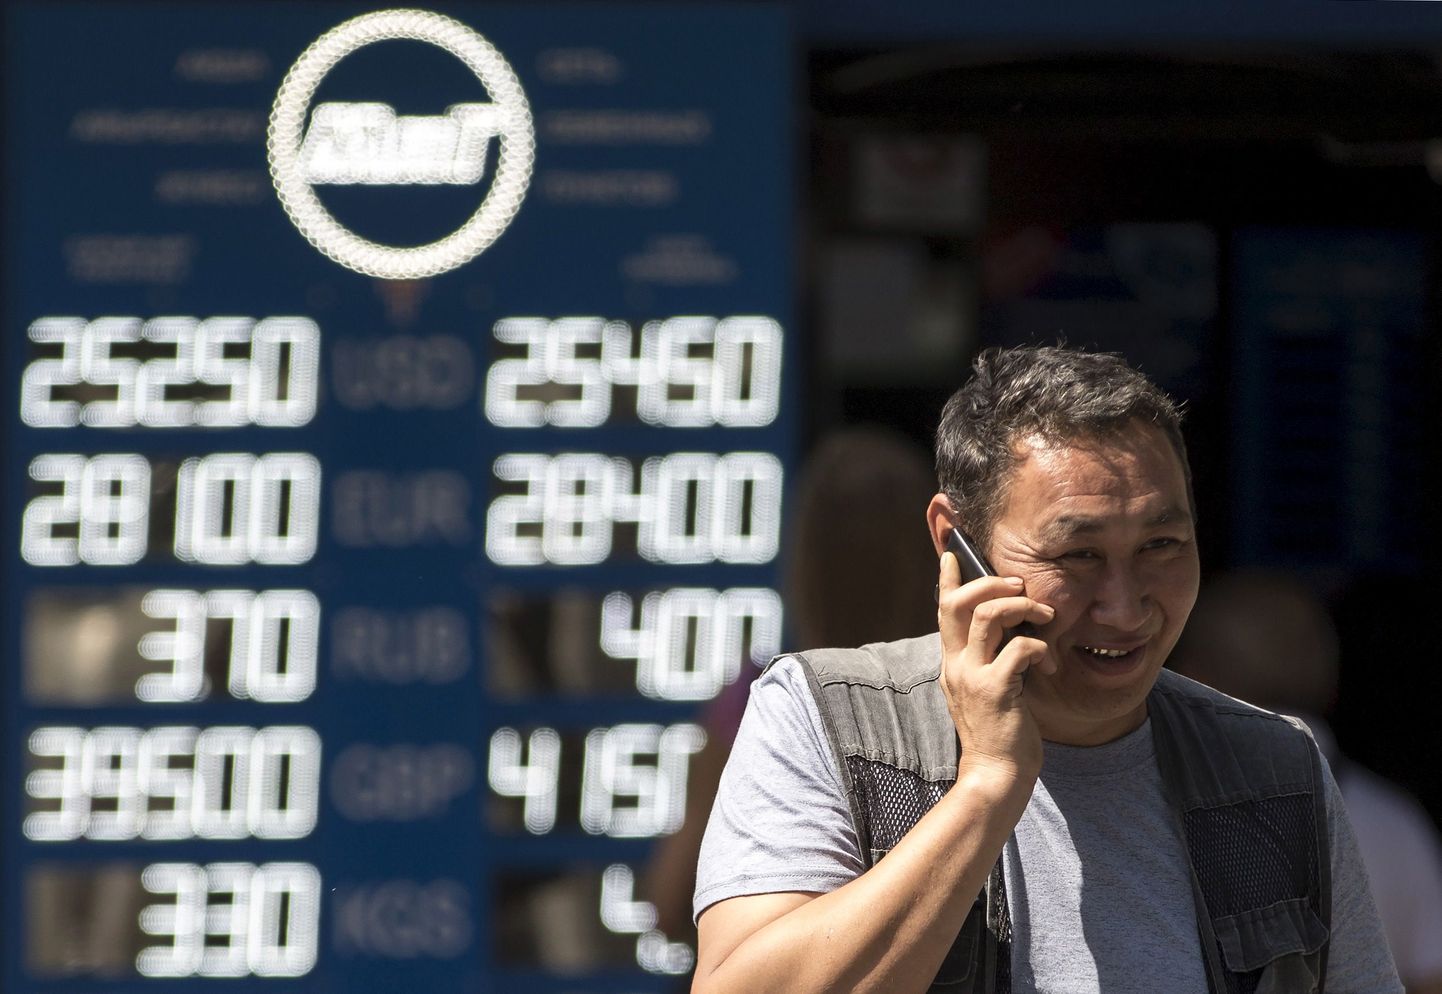 Alma-Atõ elanik valuutavahetuse kursse näitava tabloo ees. Kasahstan devalveeris neljapäeval tenge, kaupmehed reageerisid sellele koheselt kaupade hindade tõstmisega.